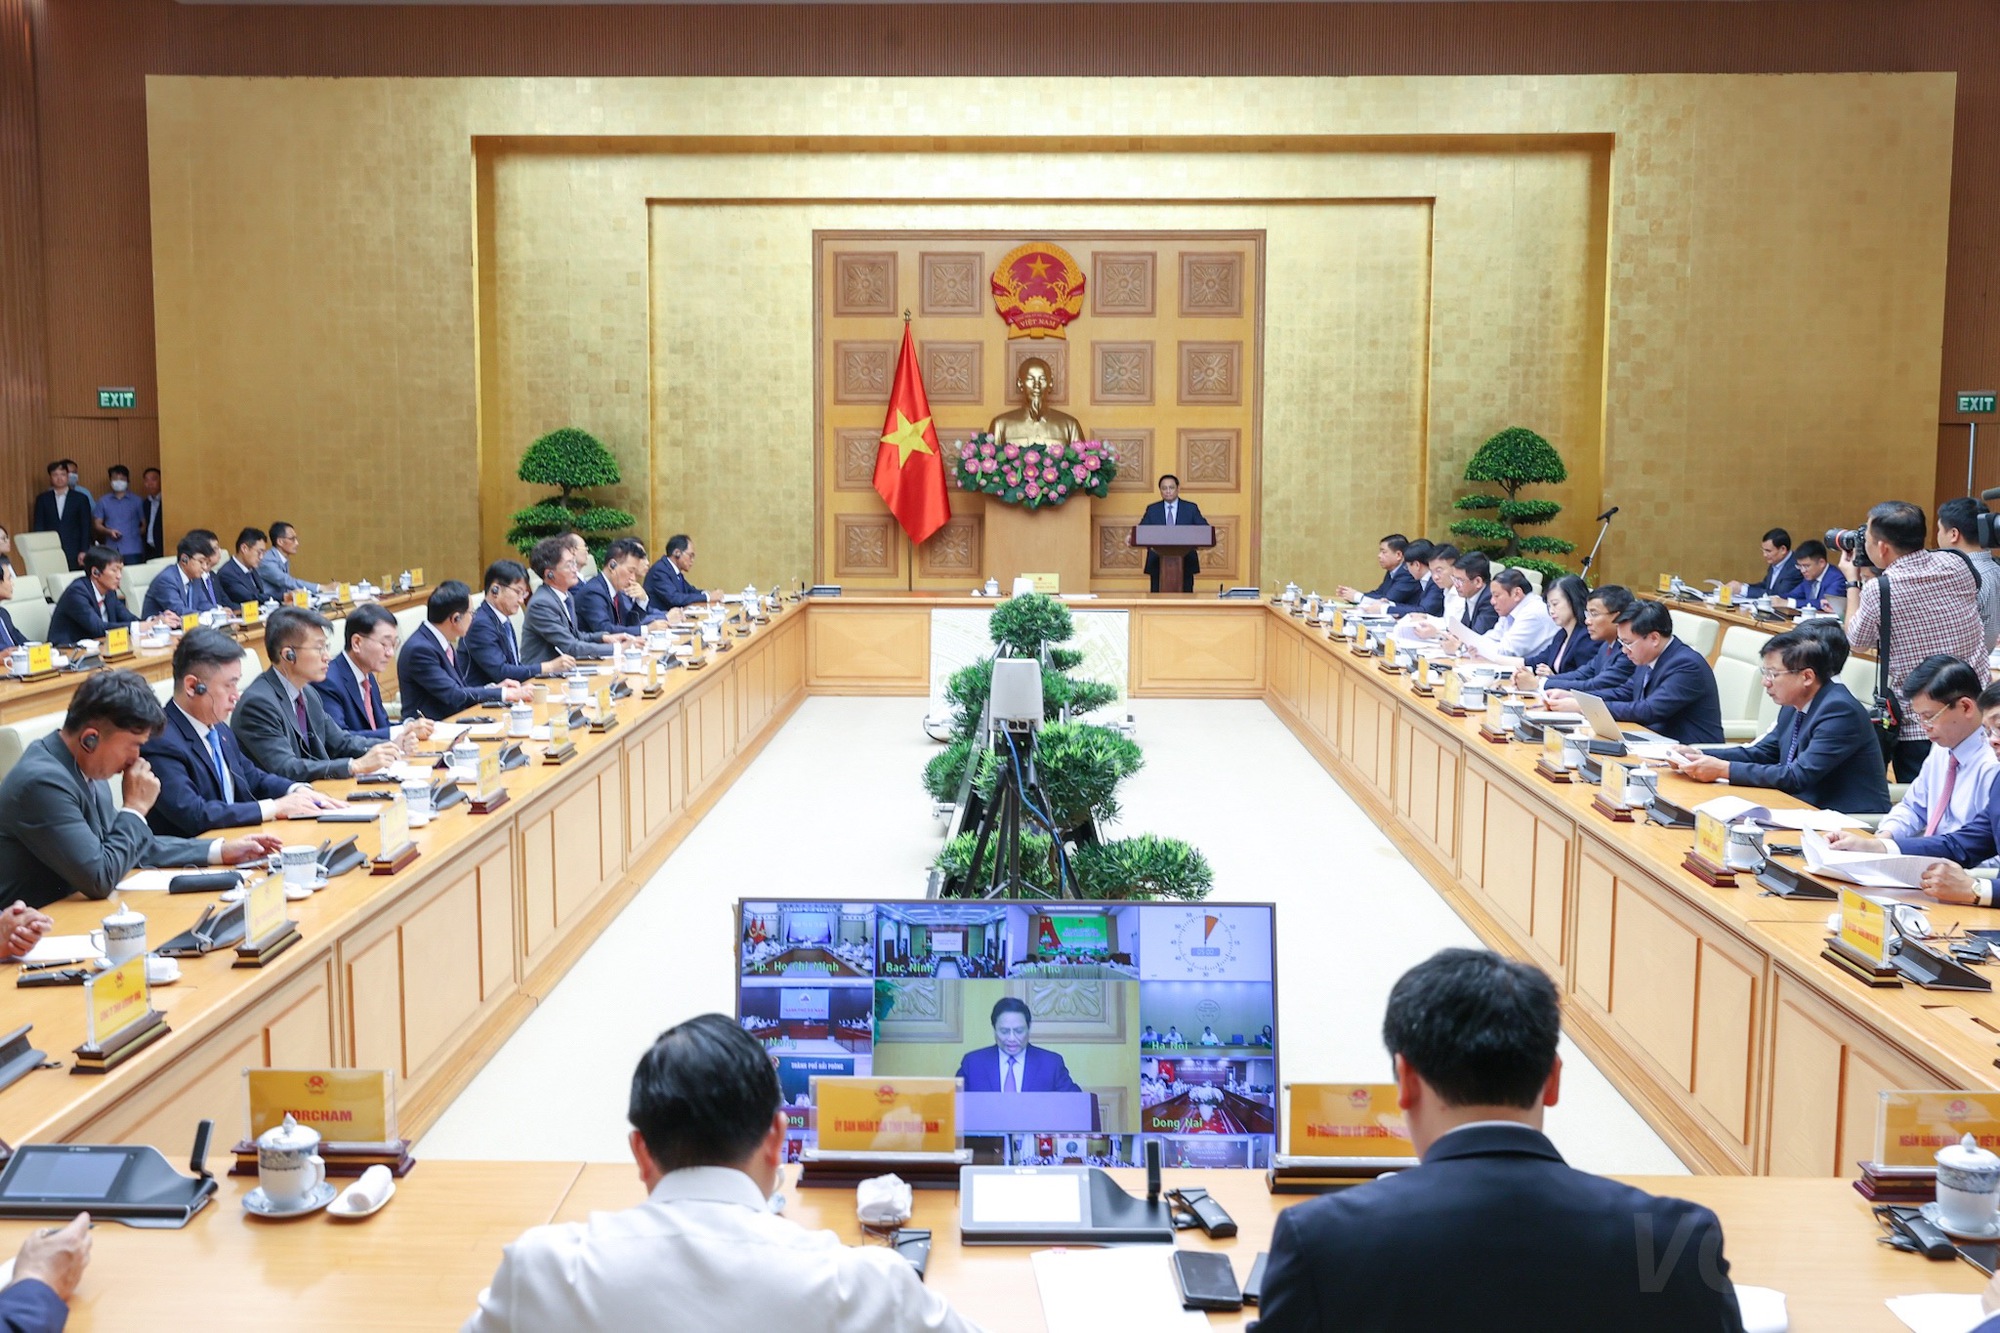 Thủ tướng đối thoại với doanh nghiệp Hàn Quốc: Ấn tượng với sự điều hành của Chính phủ Việt Nam - Ảnh 3.